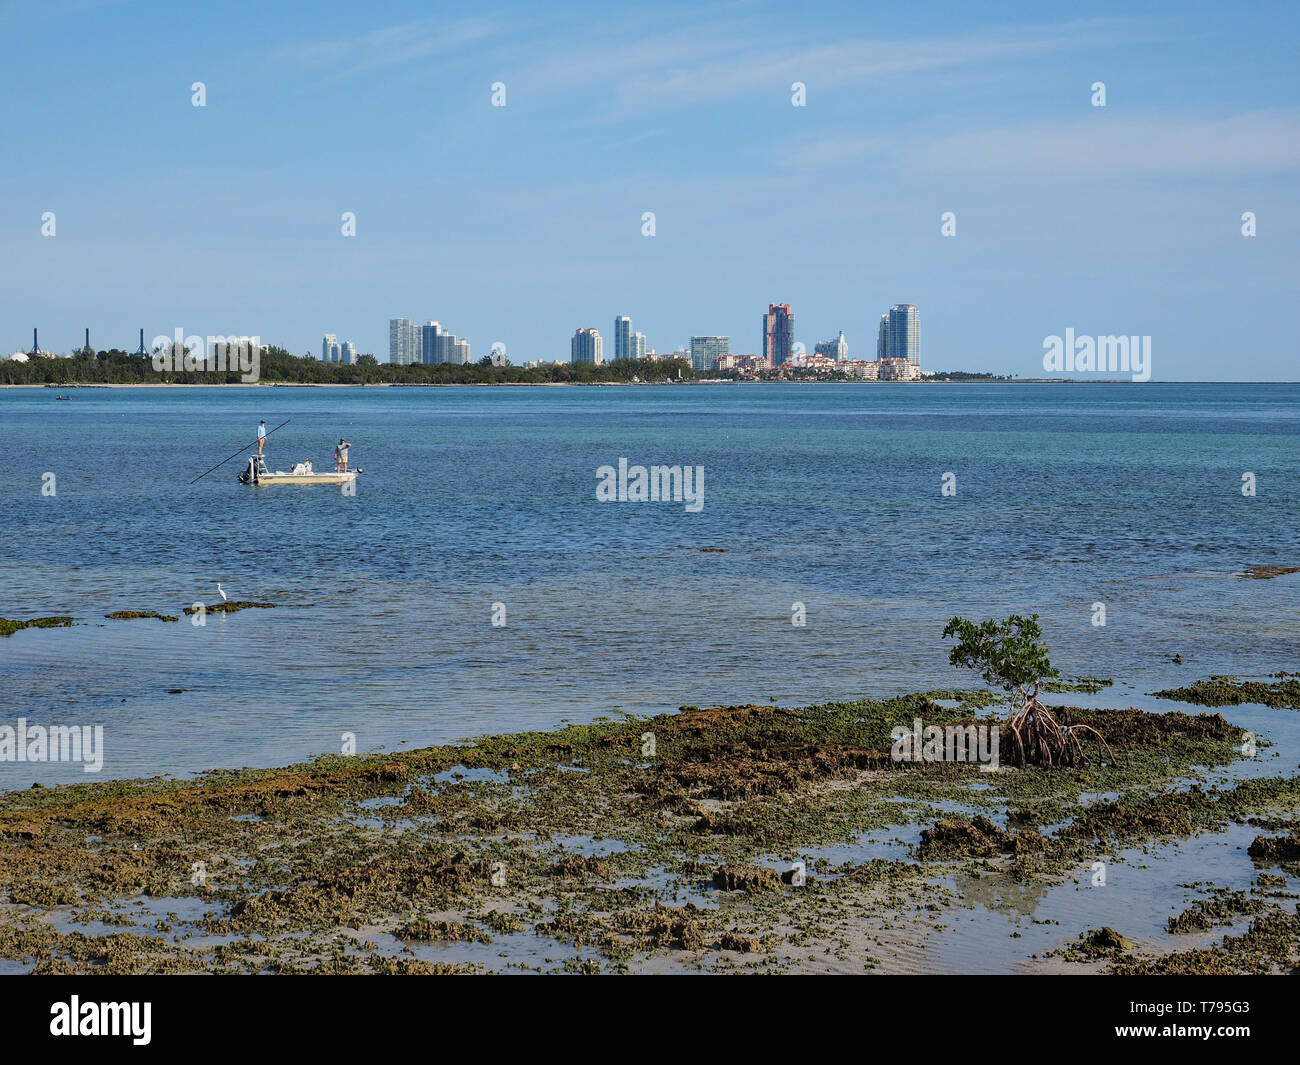 Les pêcheurs de corail fossilisé dans Bear Cut sur Key Biscayne, en Floride, à marée basse avec des immeubles de Miami Beach dans l'arrière-plan. Banque D'Images